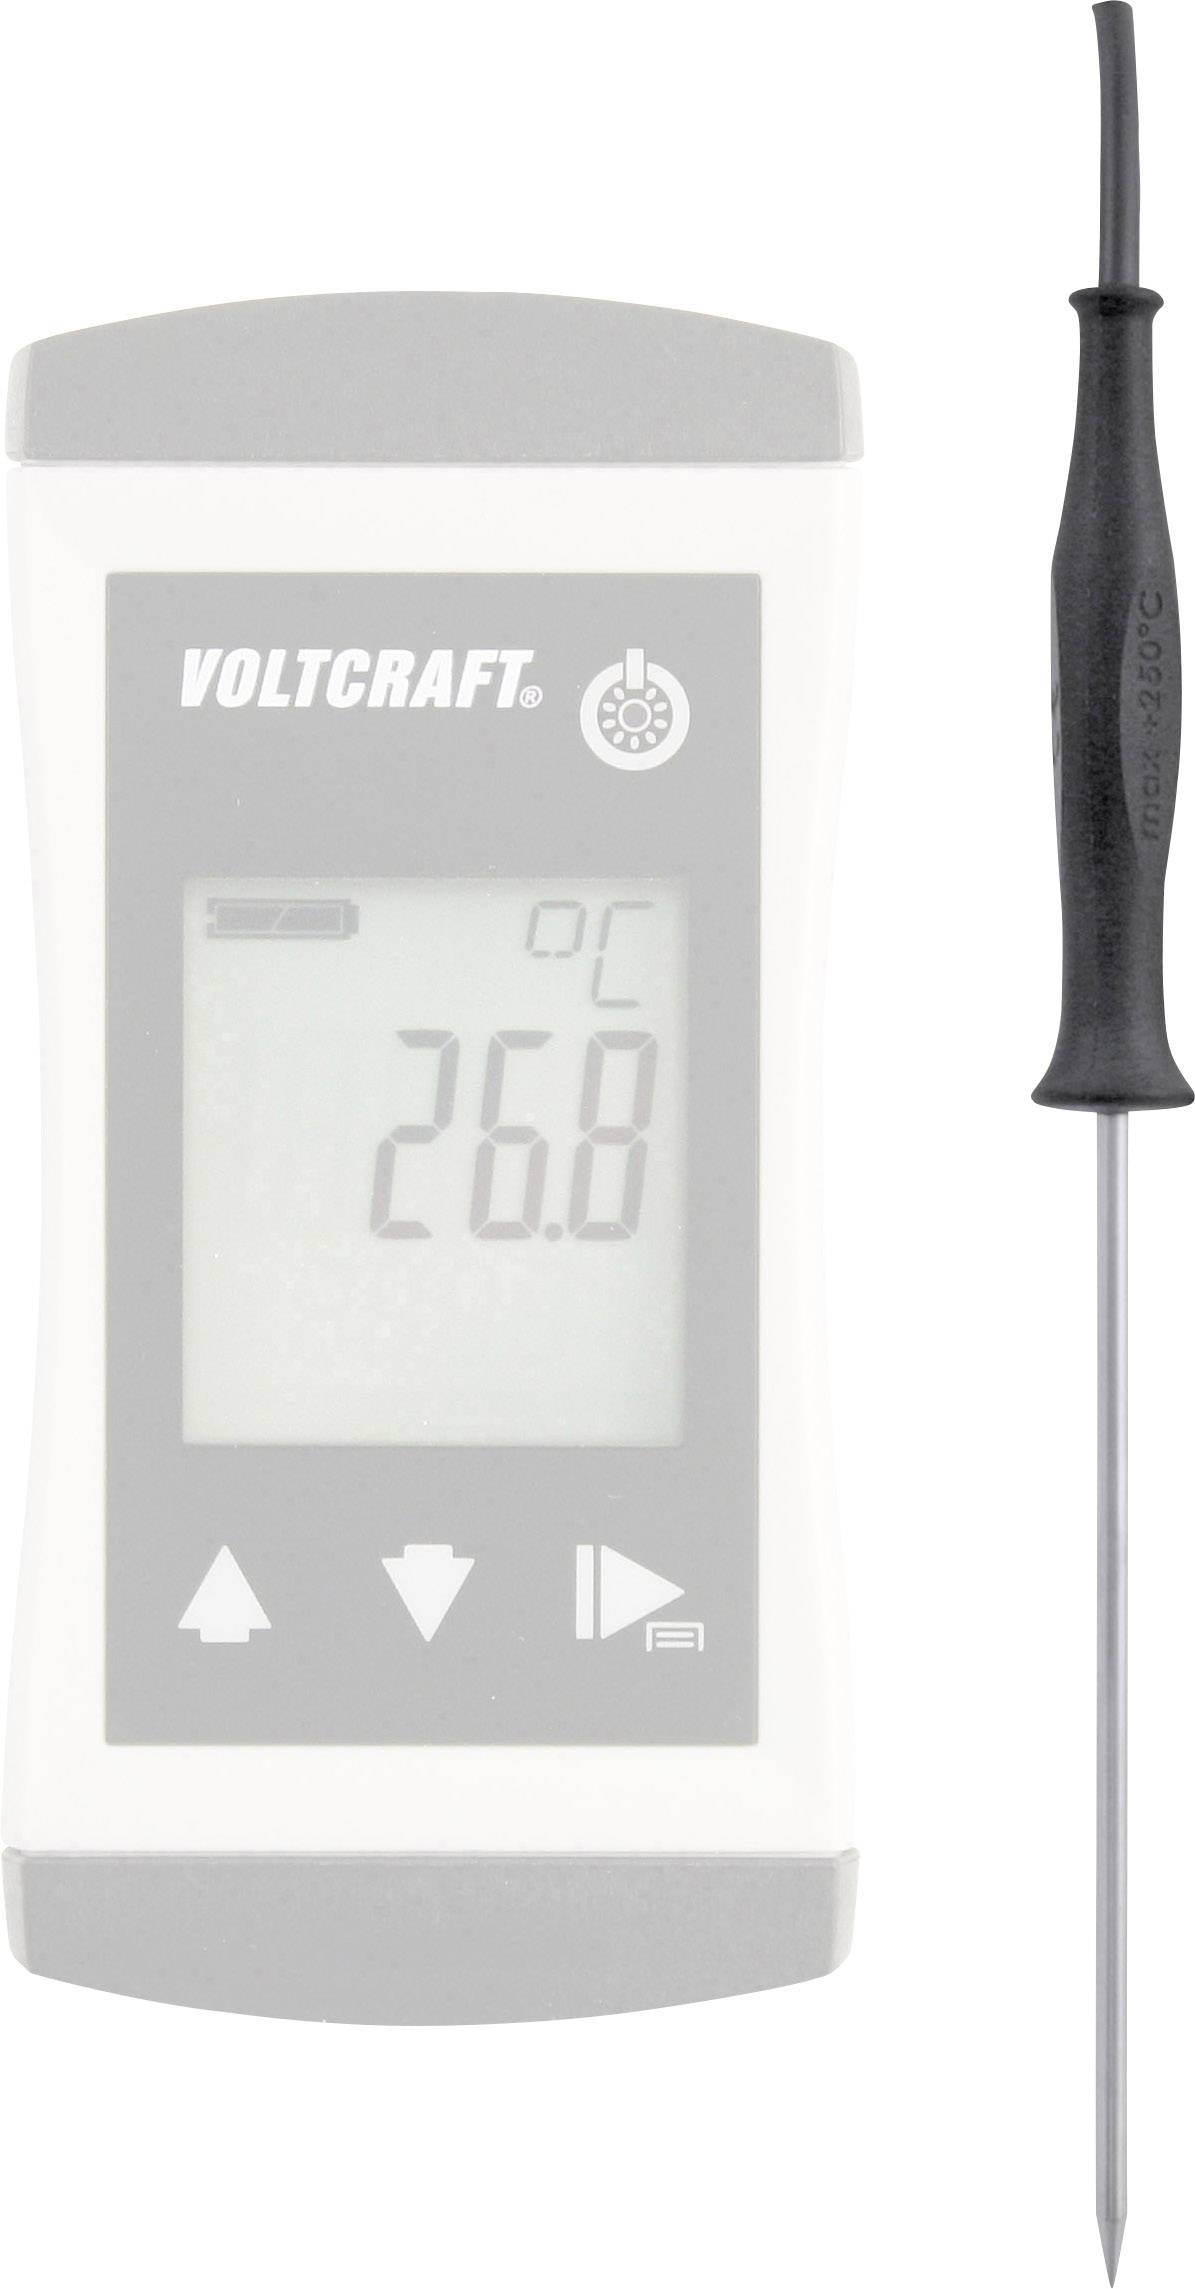 VOLTCRAFT TPT-202 Einstechfühler -70 bis 250 °C Fühler-Typ Pt1000